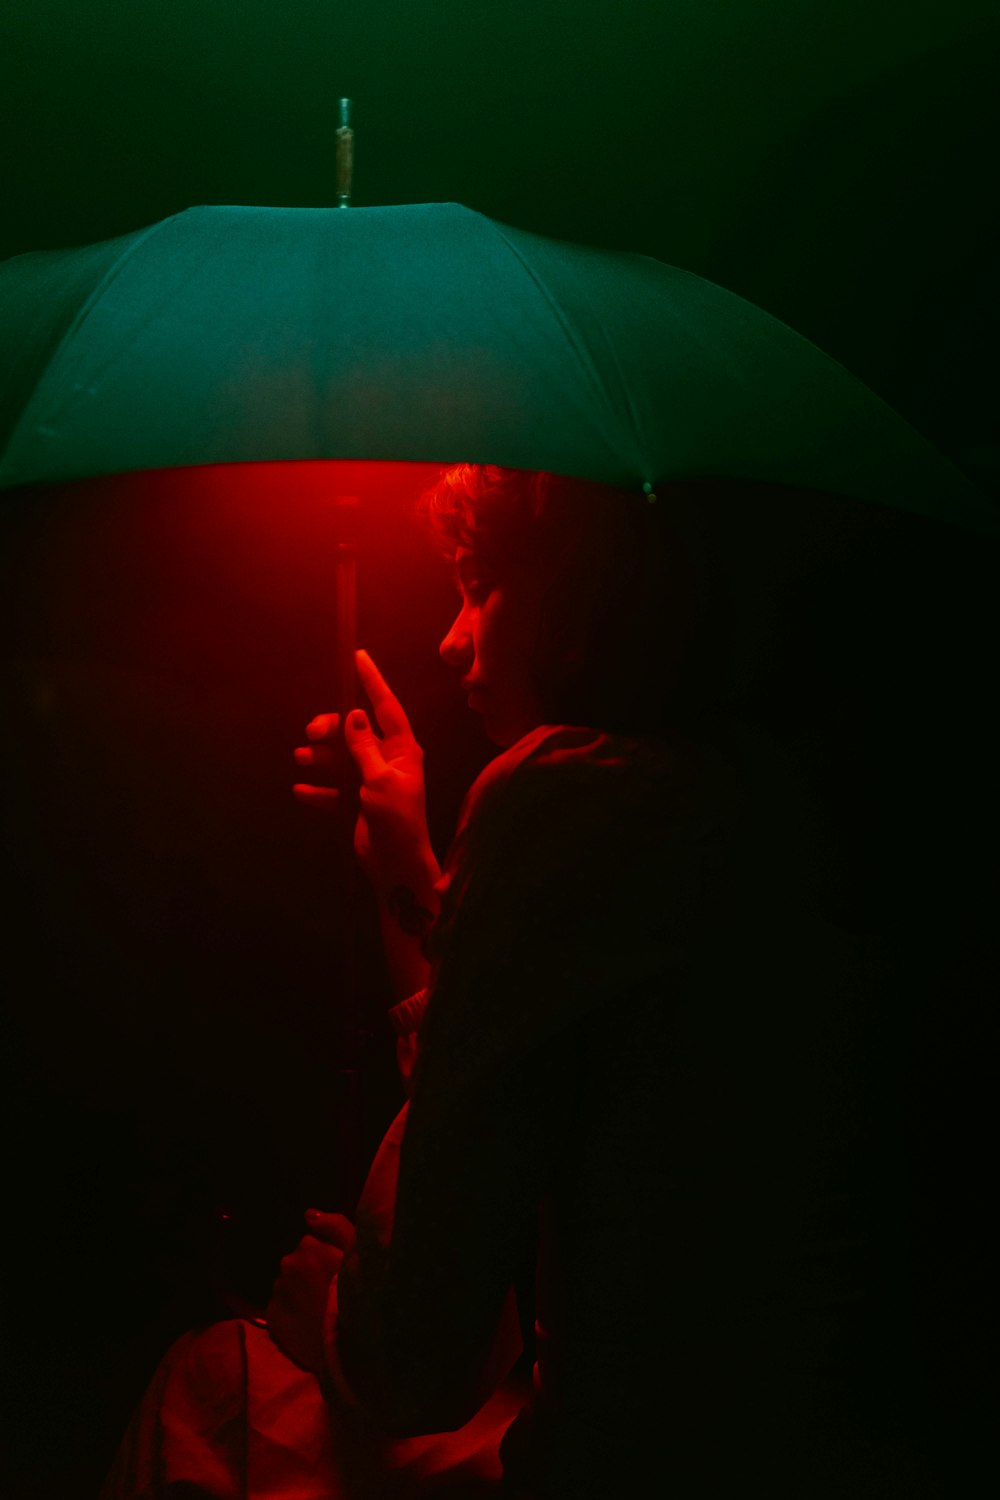 어둠 속에서 우산을 들고 있는 남자